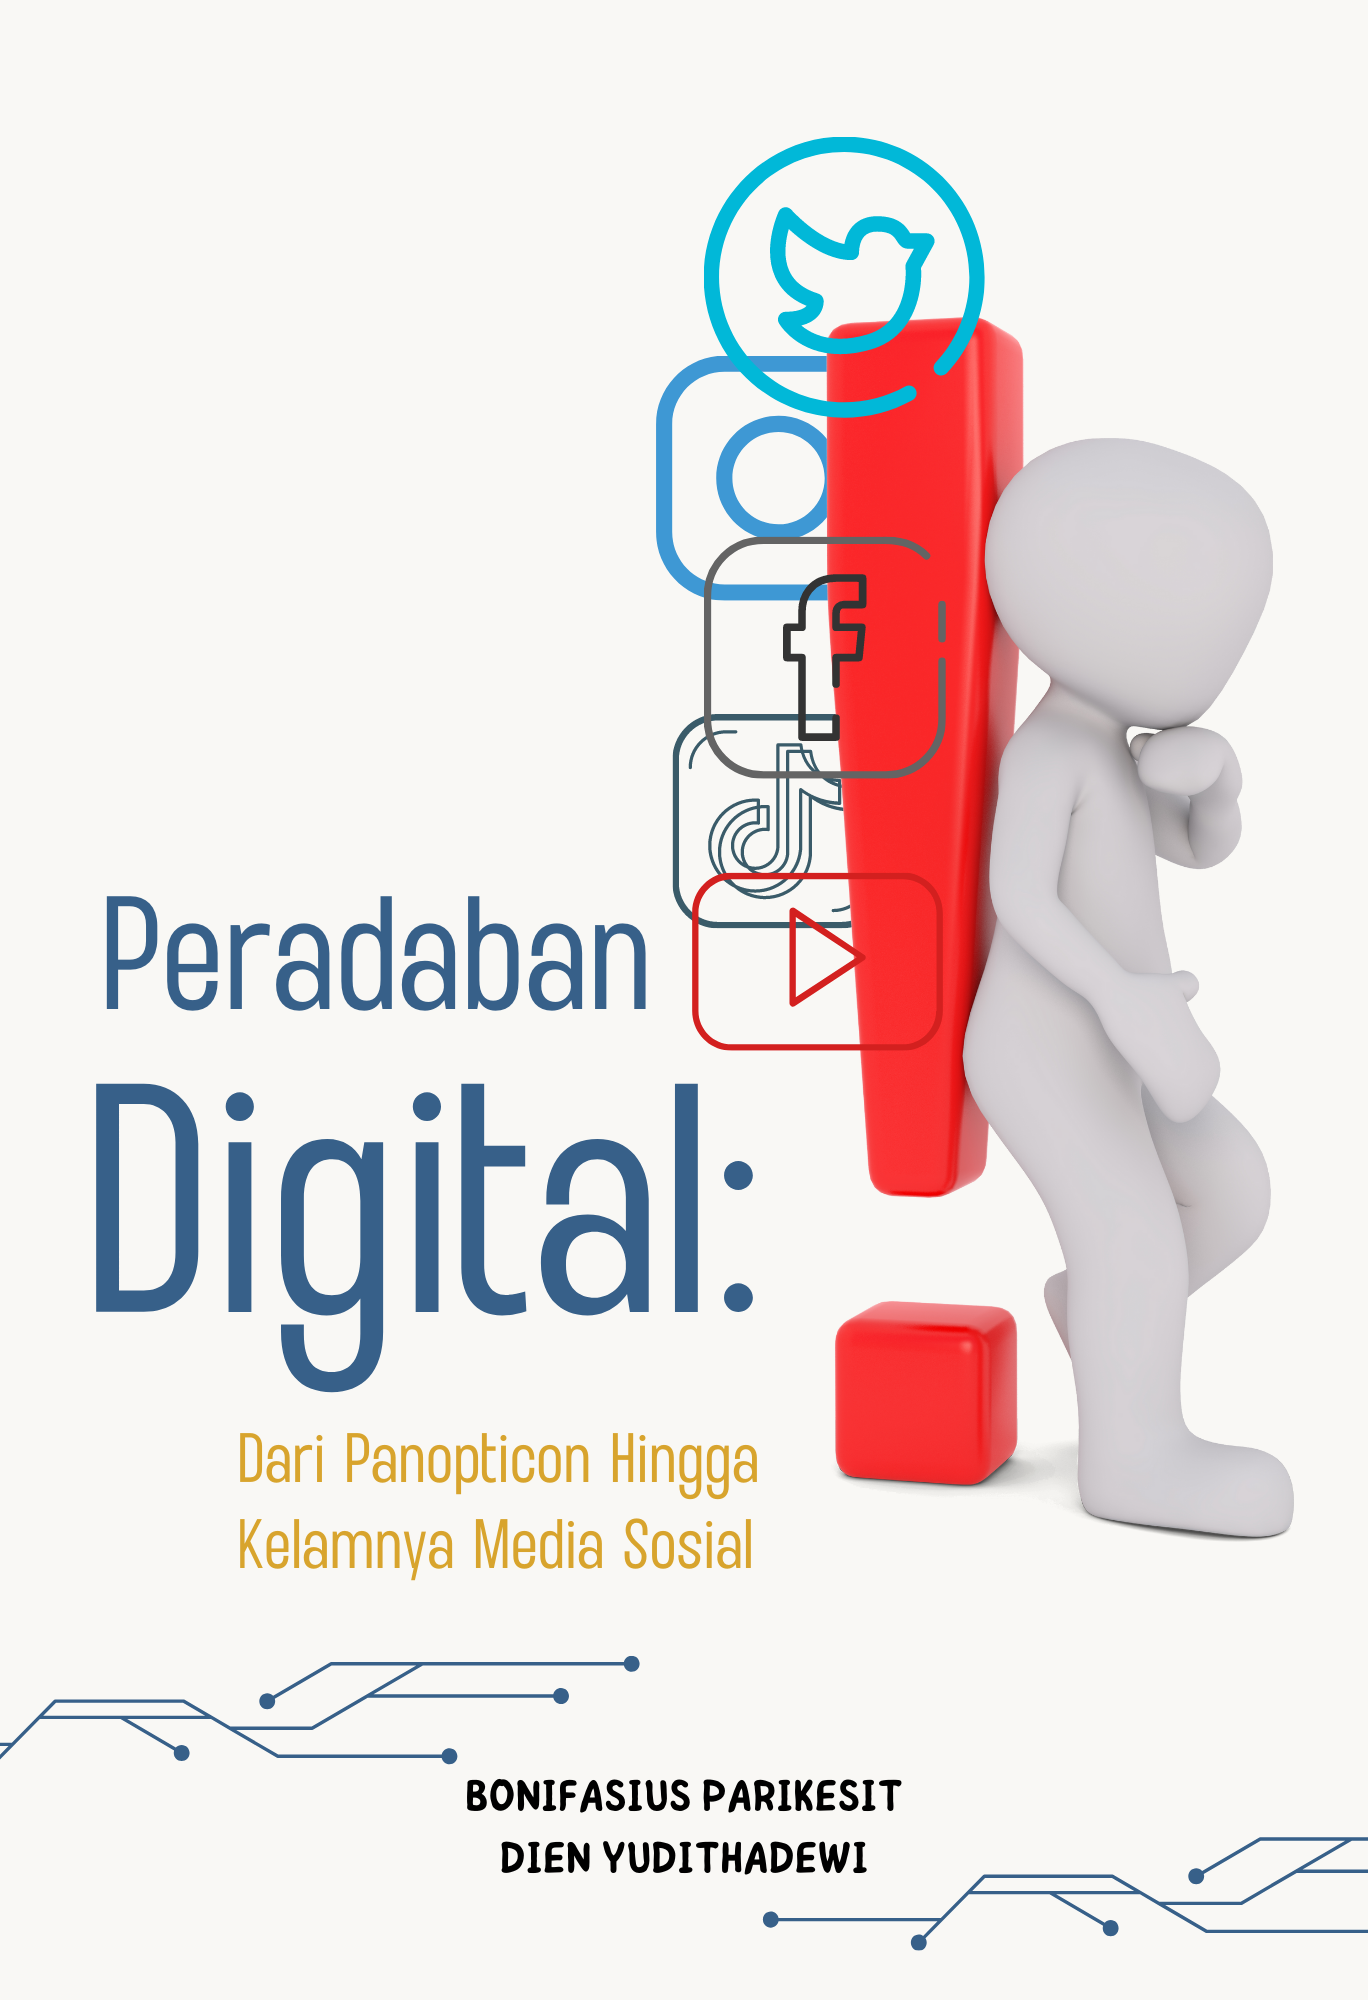 Peradaban digital dari panopticon hingga kelamnya media sosial